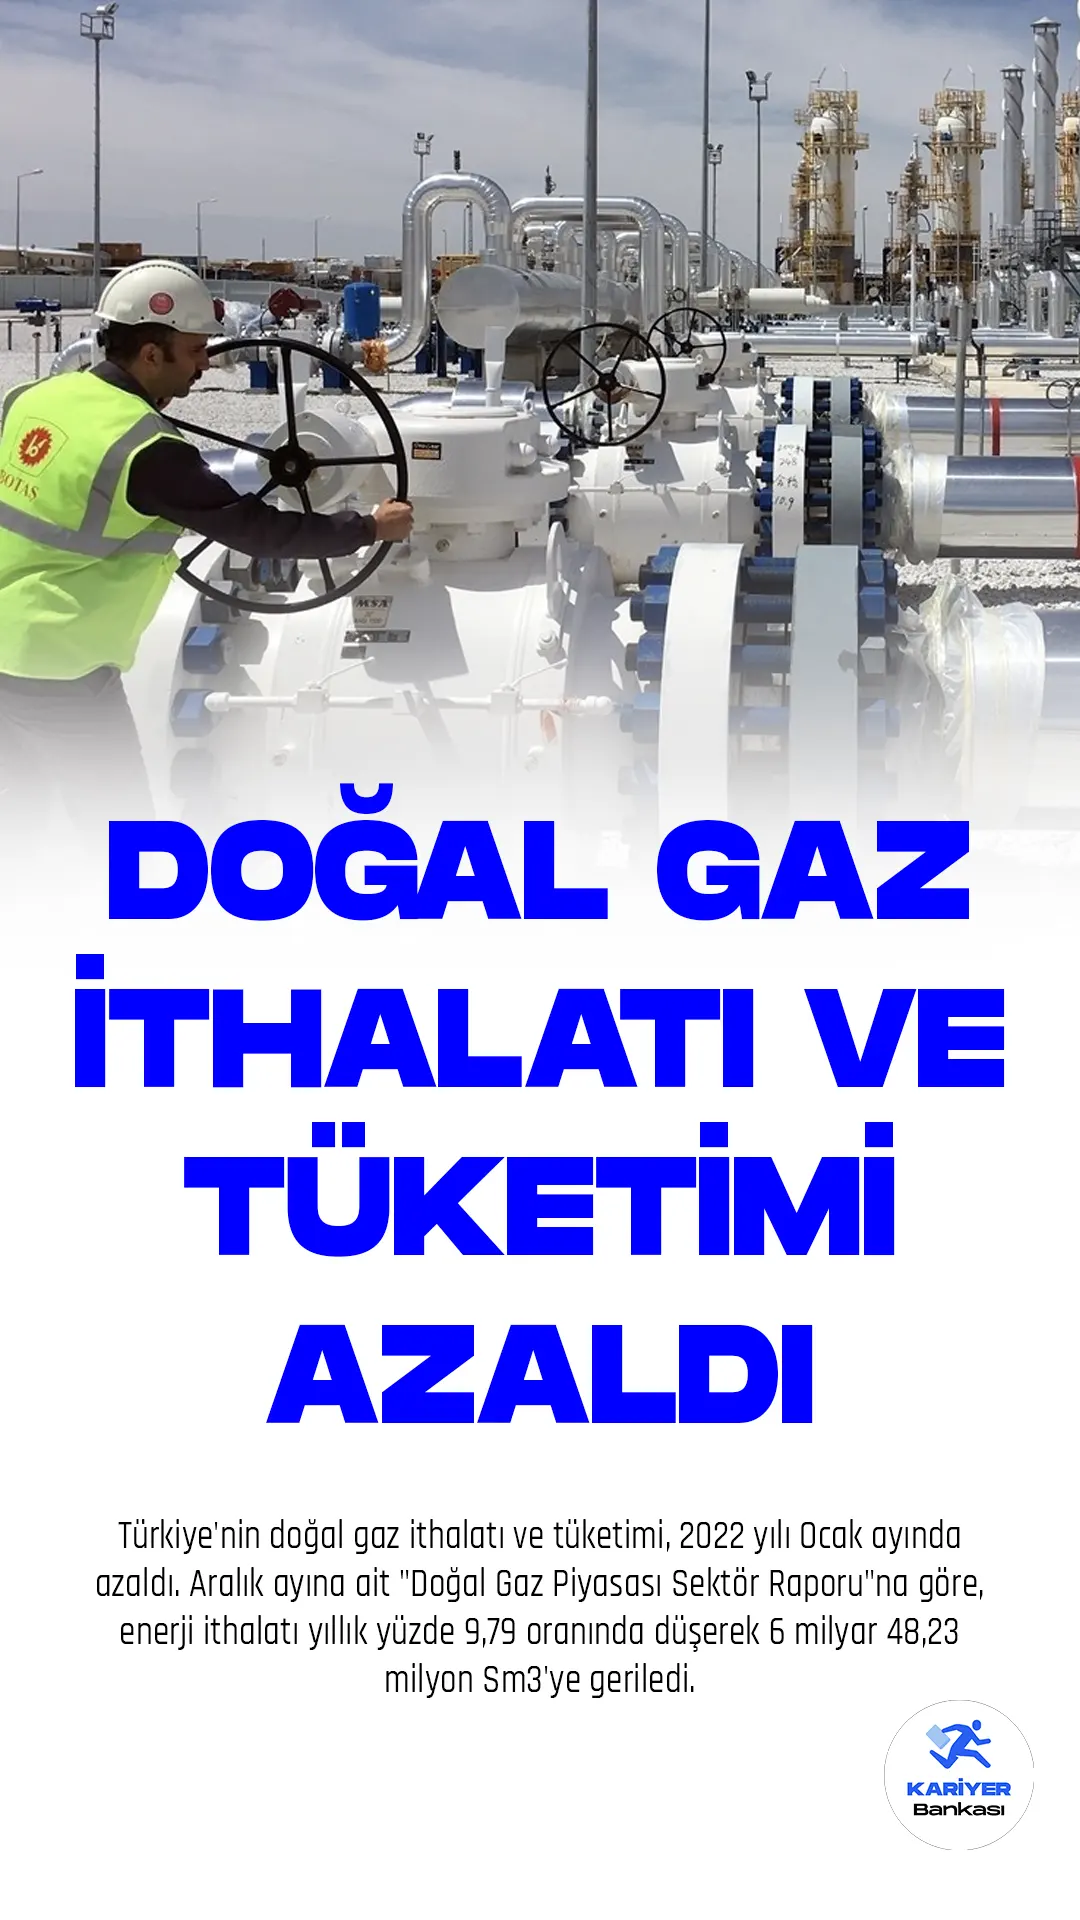 Türkiye'nin doğal gaz ithalatı ve tüketimi, 2022 yılı Ocak ayında azaldı. Aralık ayına ait "Doğal Gaz Piyasası Sektör Raporu"na göre, enerji ithalatı yıllık yüzde 9,79 oranında düşerek 6 milyar 48,23 milyon Sm3'ye geriledi.